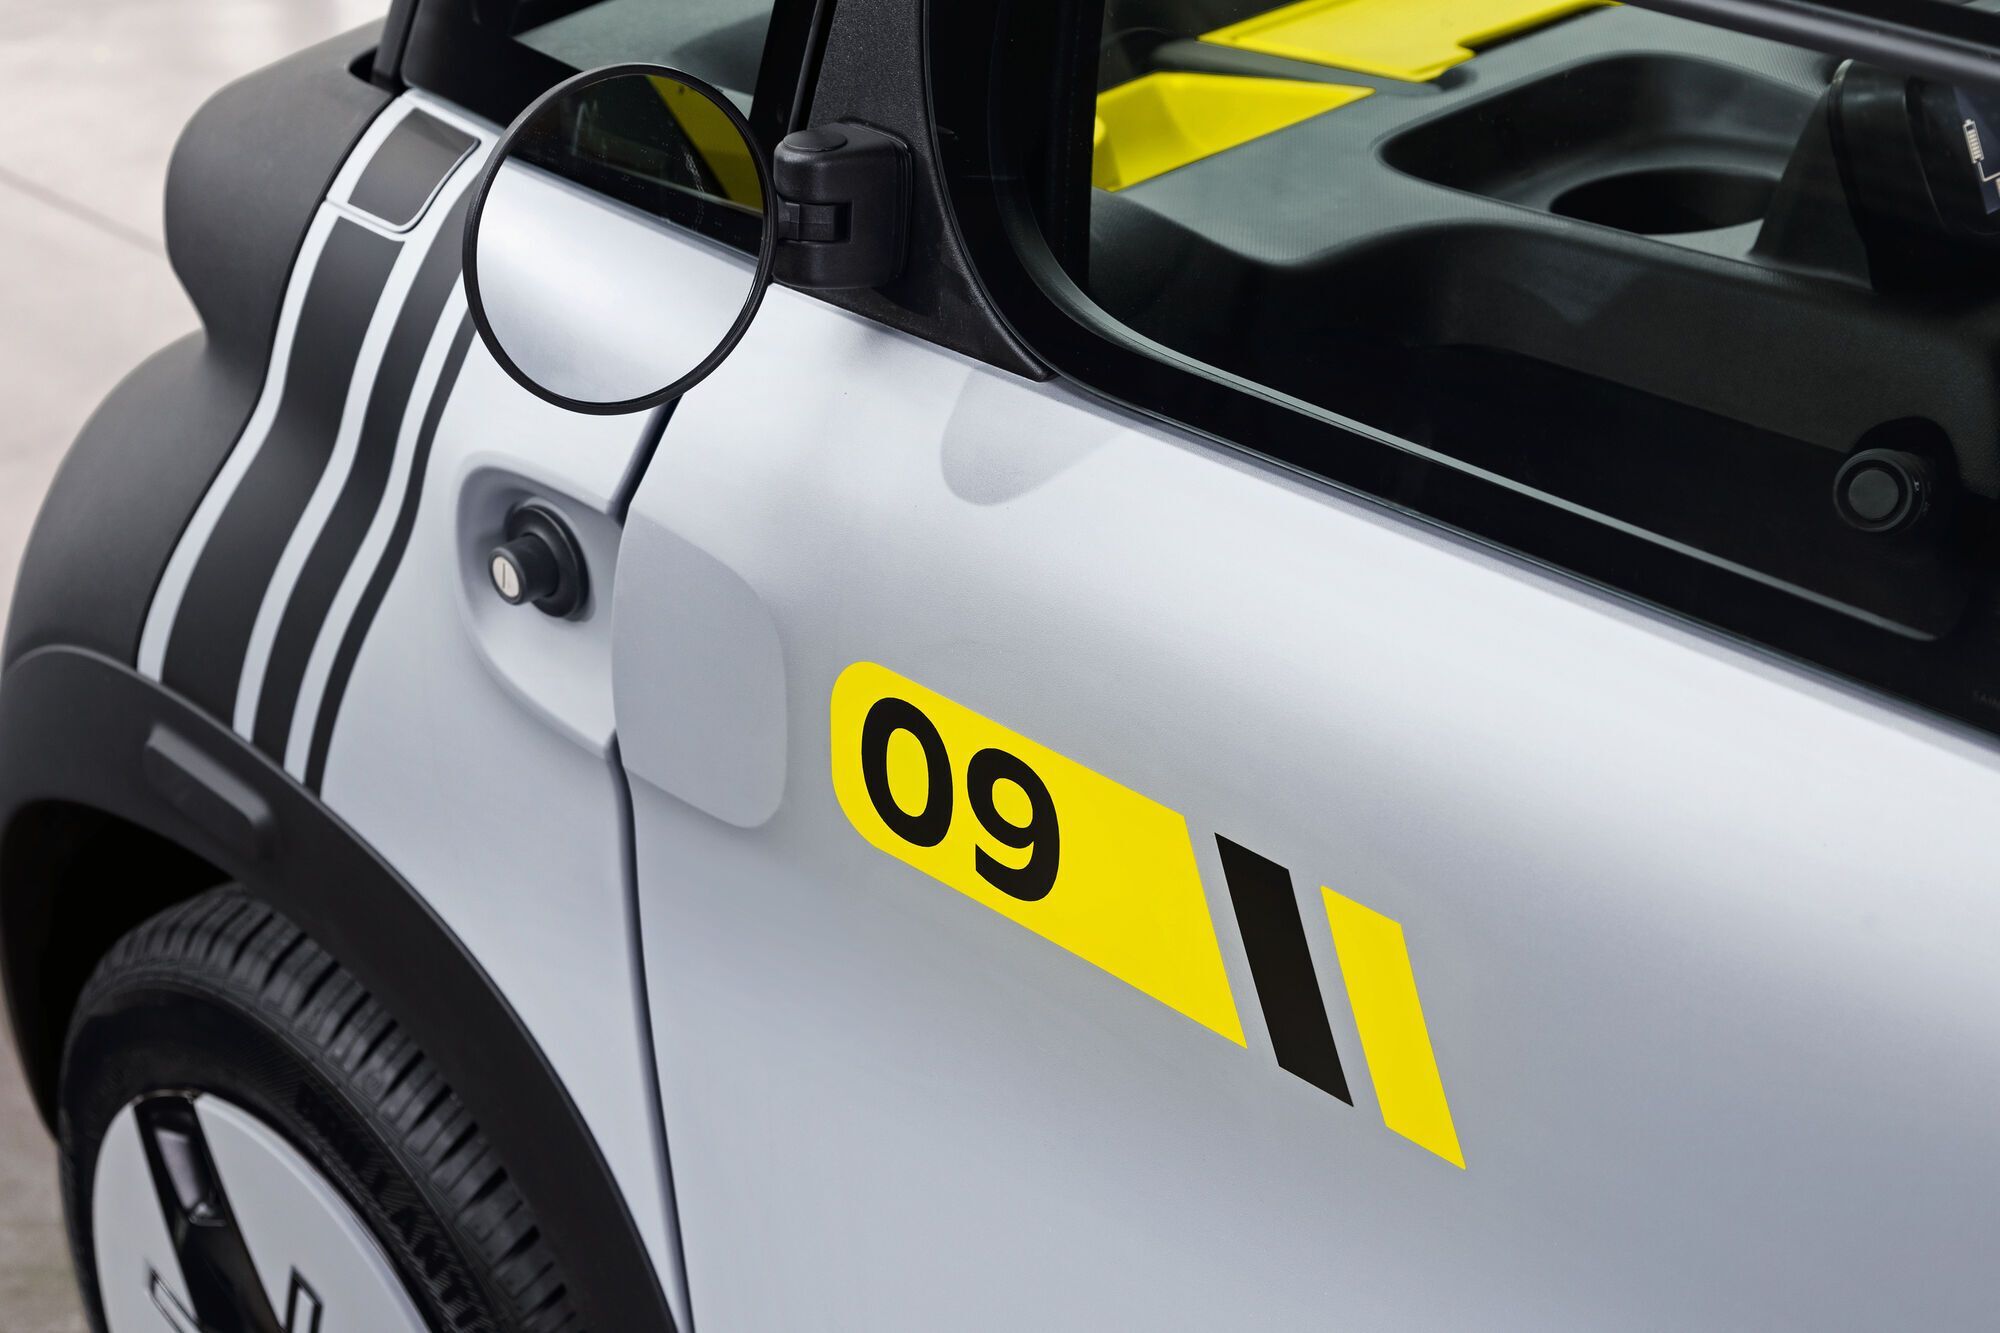 Немецкая компания Opel презентовала "футбольную" версию электромобиль Rocks-e 09 в честь знаменитой компанды "Боруссия"